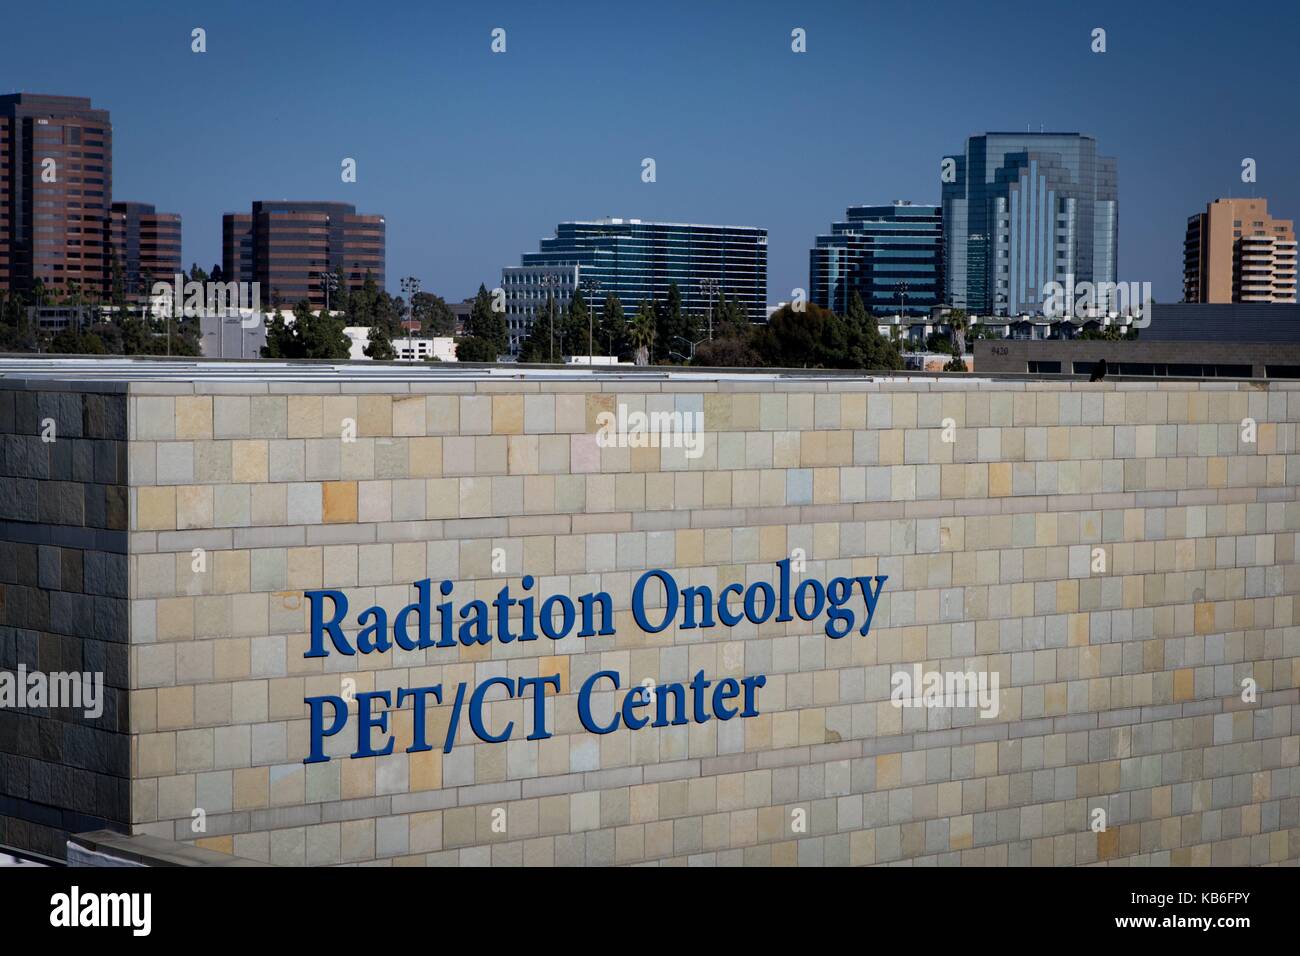 Radiologen an der PET/CT-Zentrum in La Jolla kombinieren Computertomographie (CT) und Positronen-Emissions-Tomographie (PET), um genauere Informationen zu erhalten, die im Juni 2017. | Verwendung weltweit Stockfoto